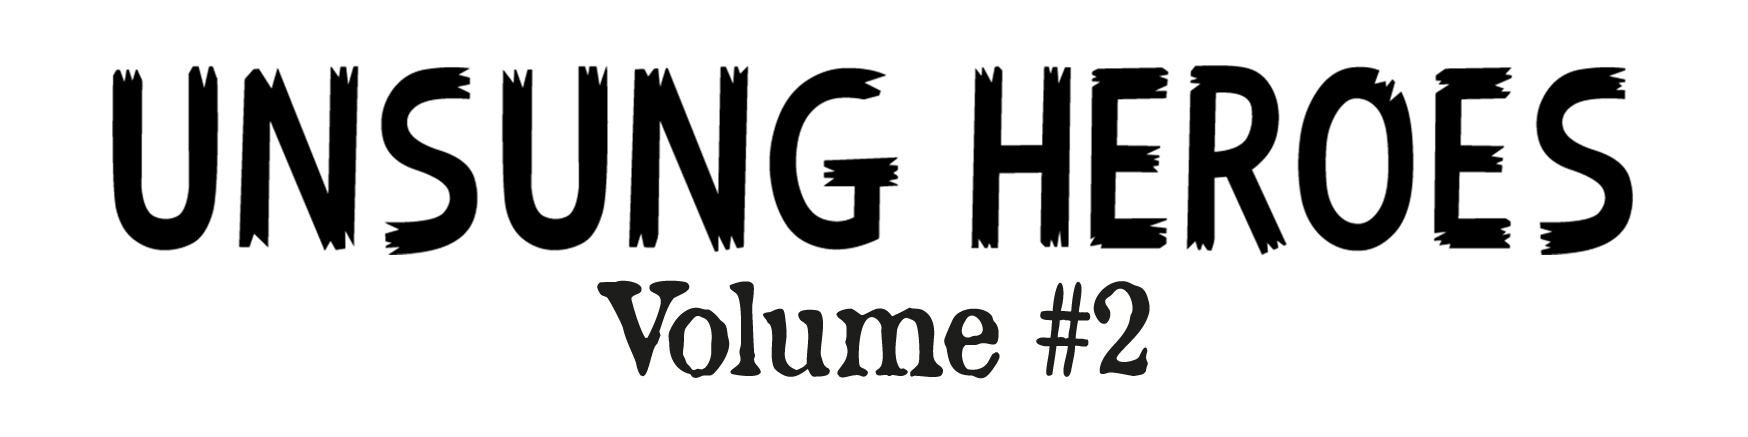 Unsung Heroes - Volume 2